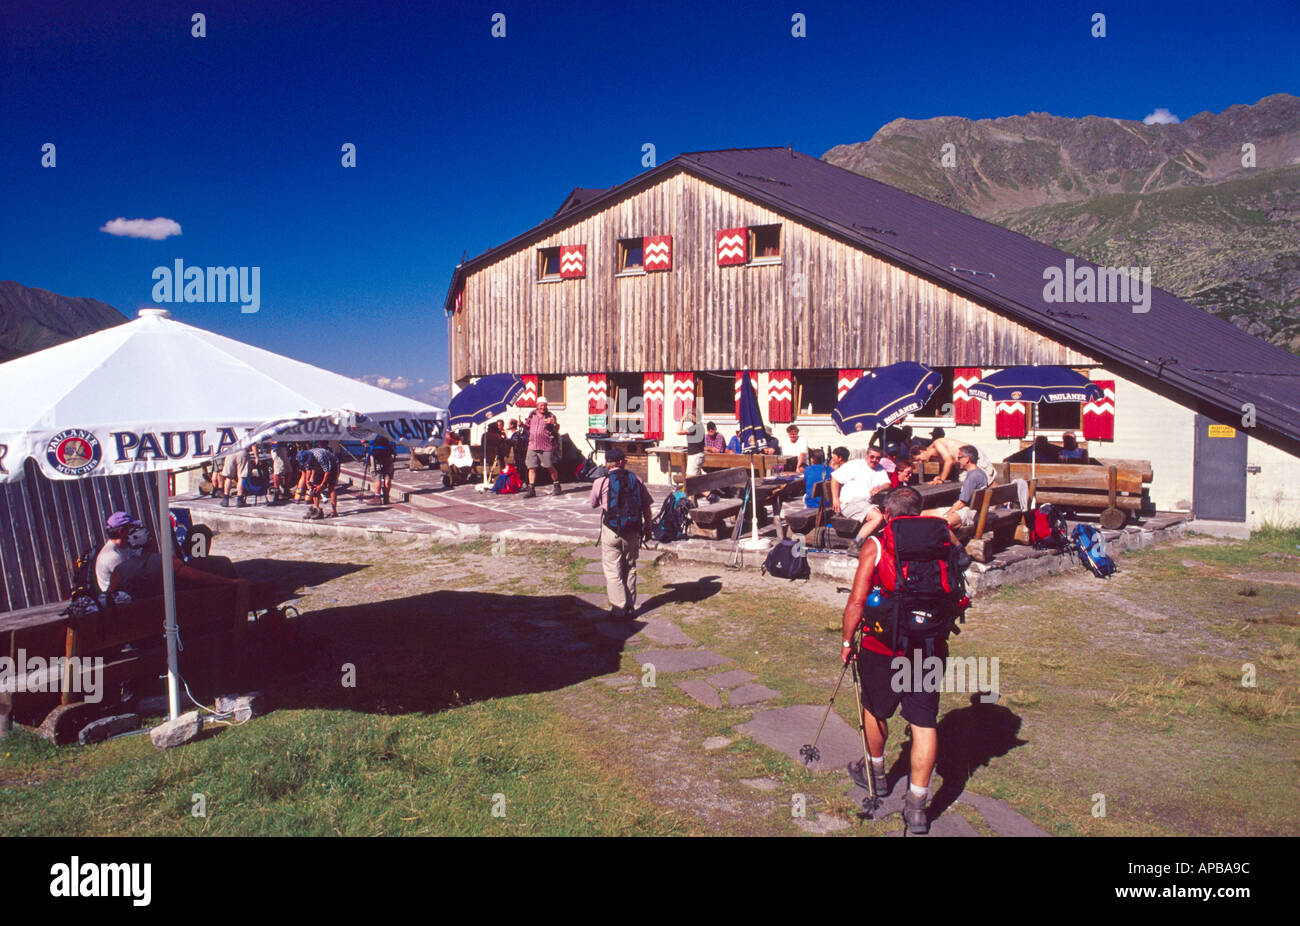 Les marcheurs bénéficiant d'un après-midi ensoleillé à la hutte, Hohenweg Sulzenau Stubai itinéraire pédestre, Tirol, Autriche Banque D'Images